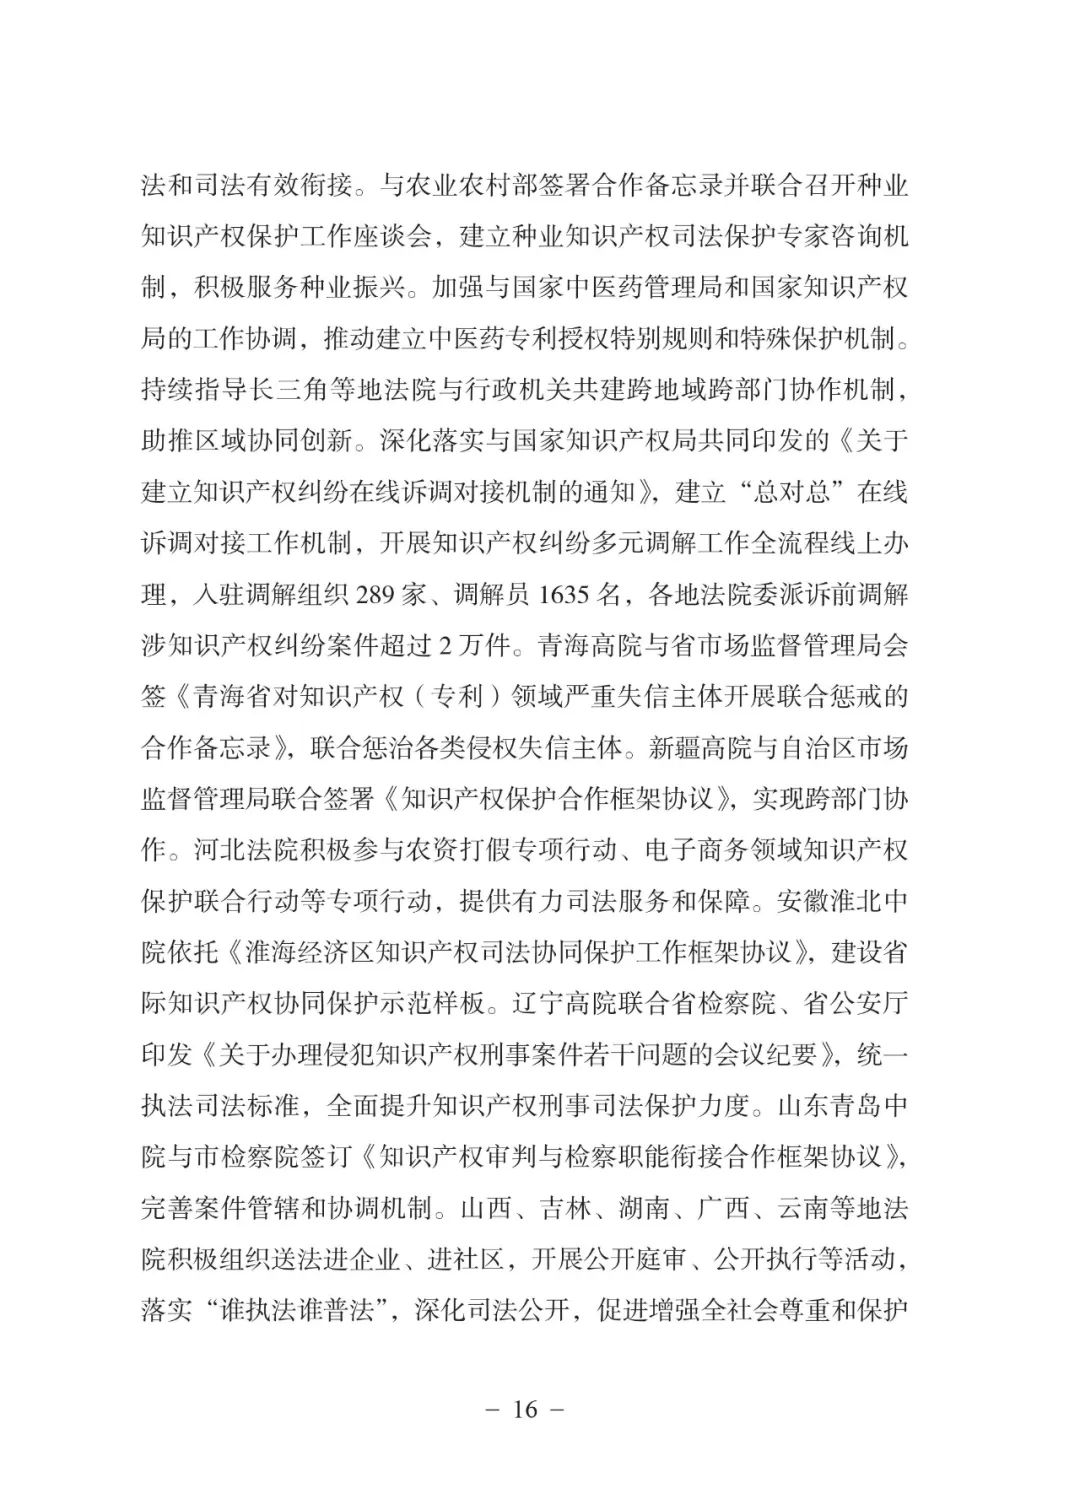 《中国法院知识产权司法保护状况（2021年）》全文发布！